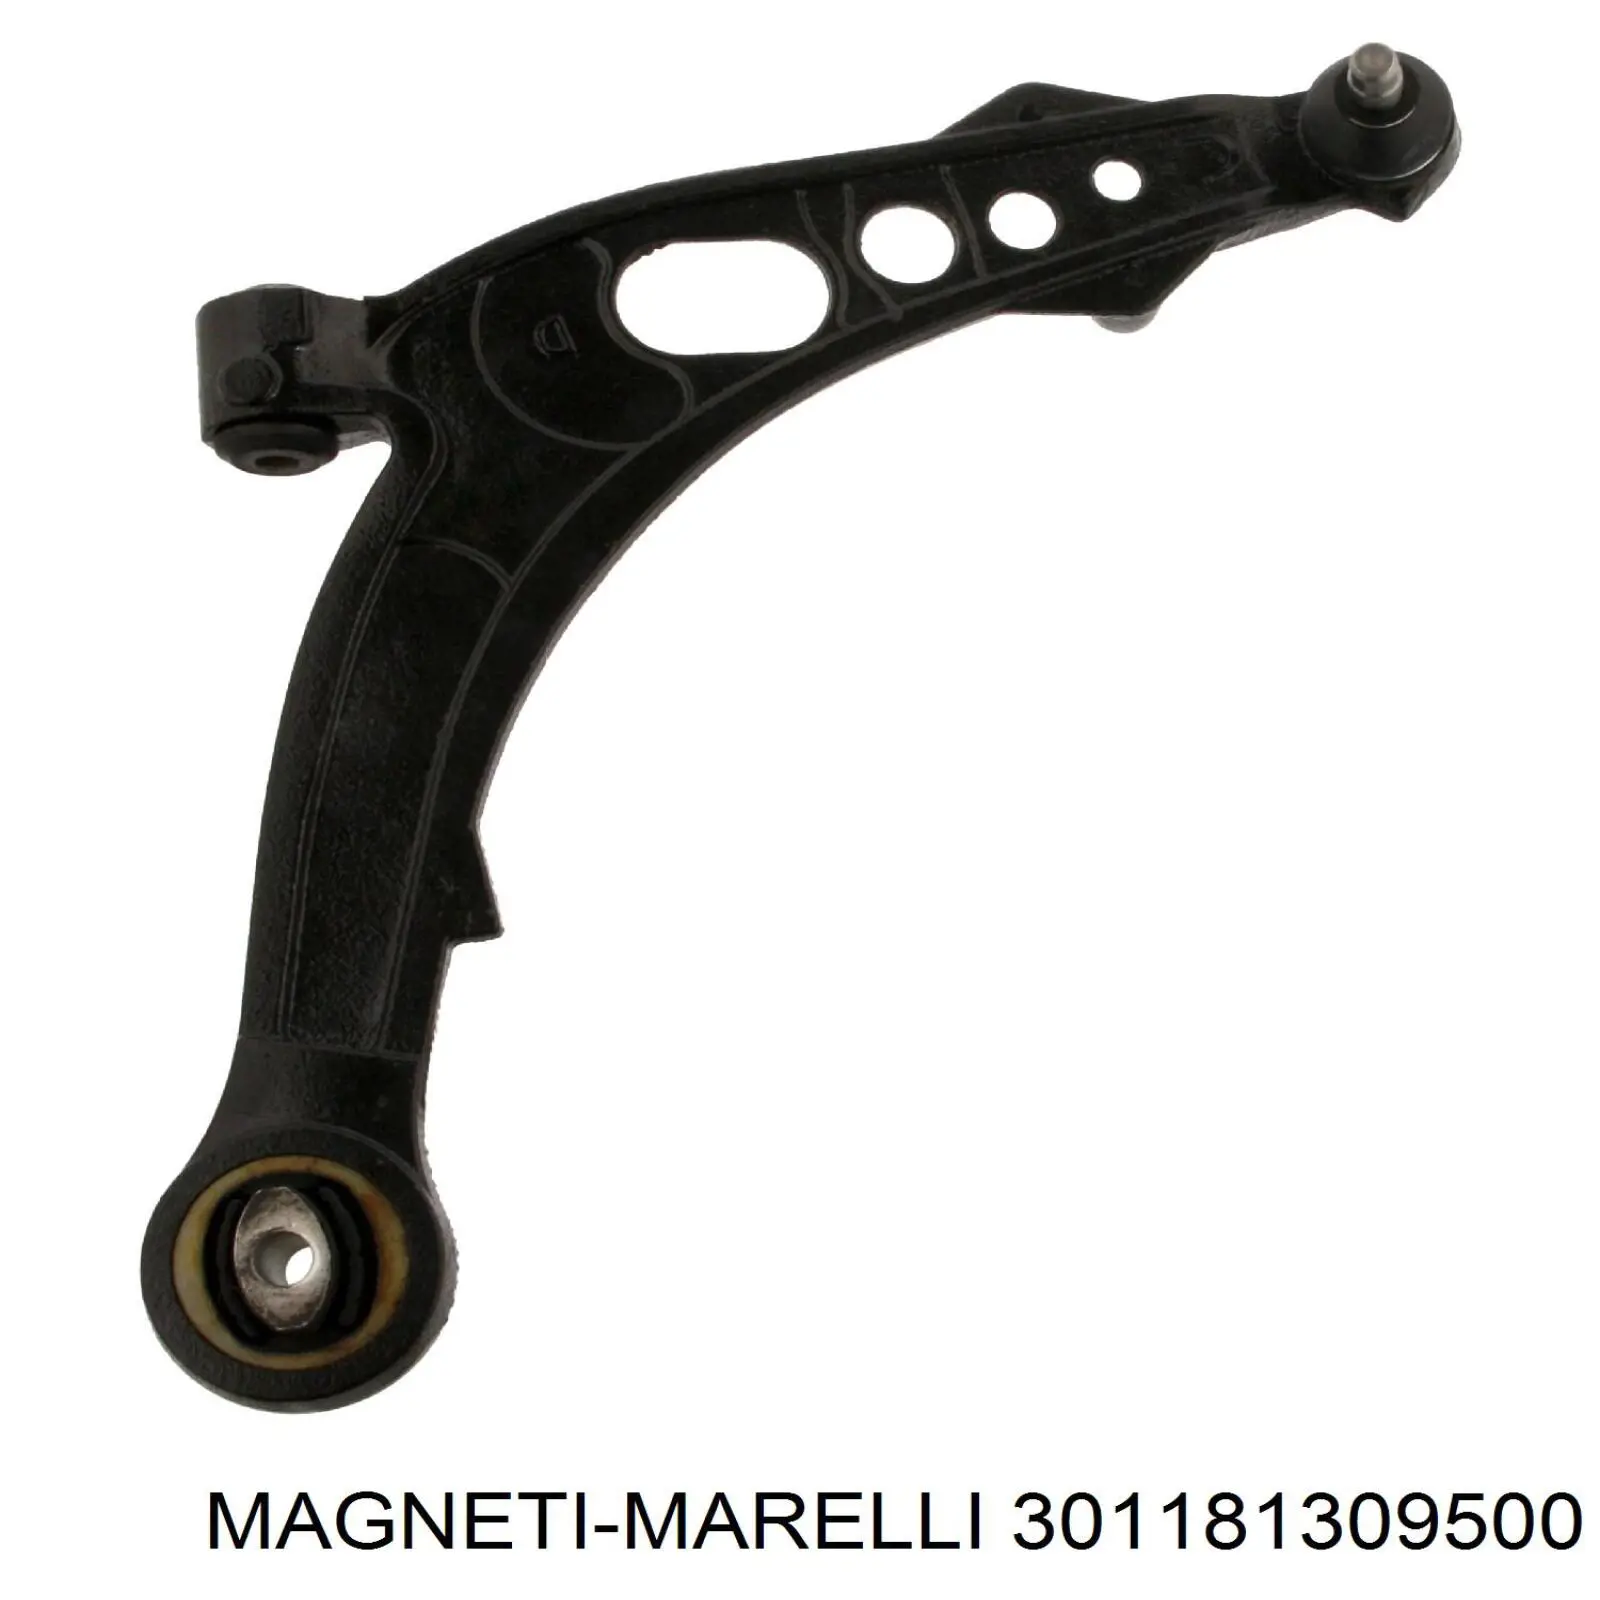 301181309500 Magneti Marelli barra oscilante, suspensión de ruedas delantera, inferior derecha